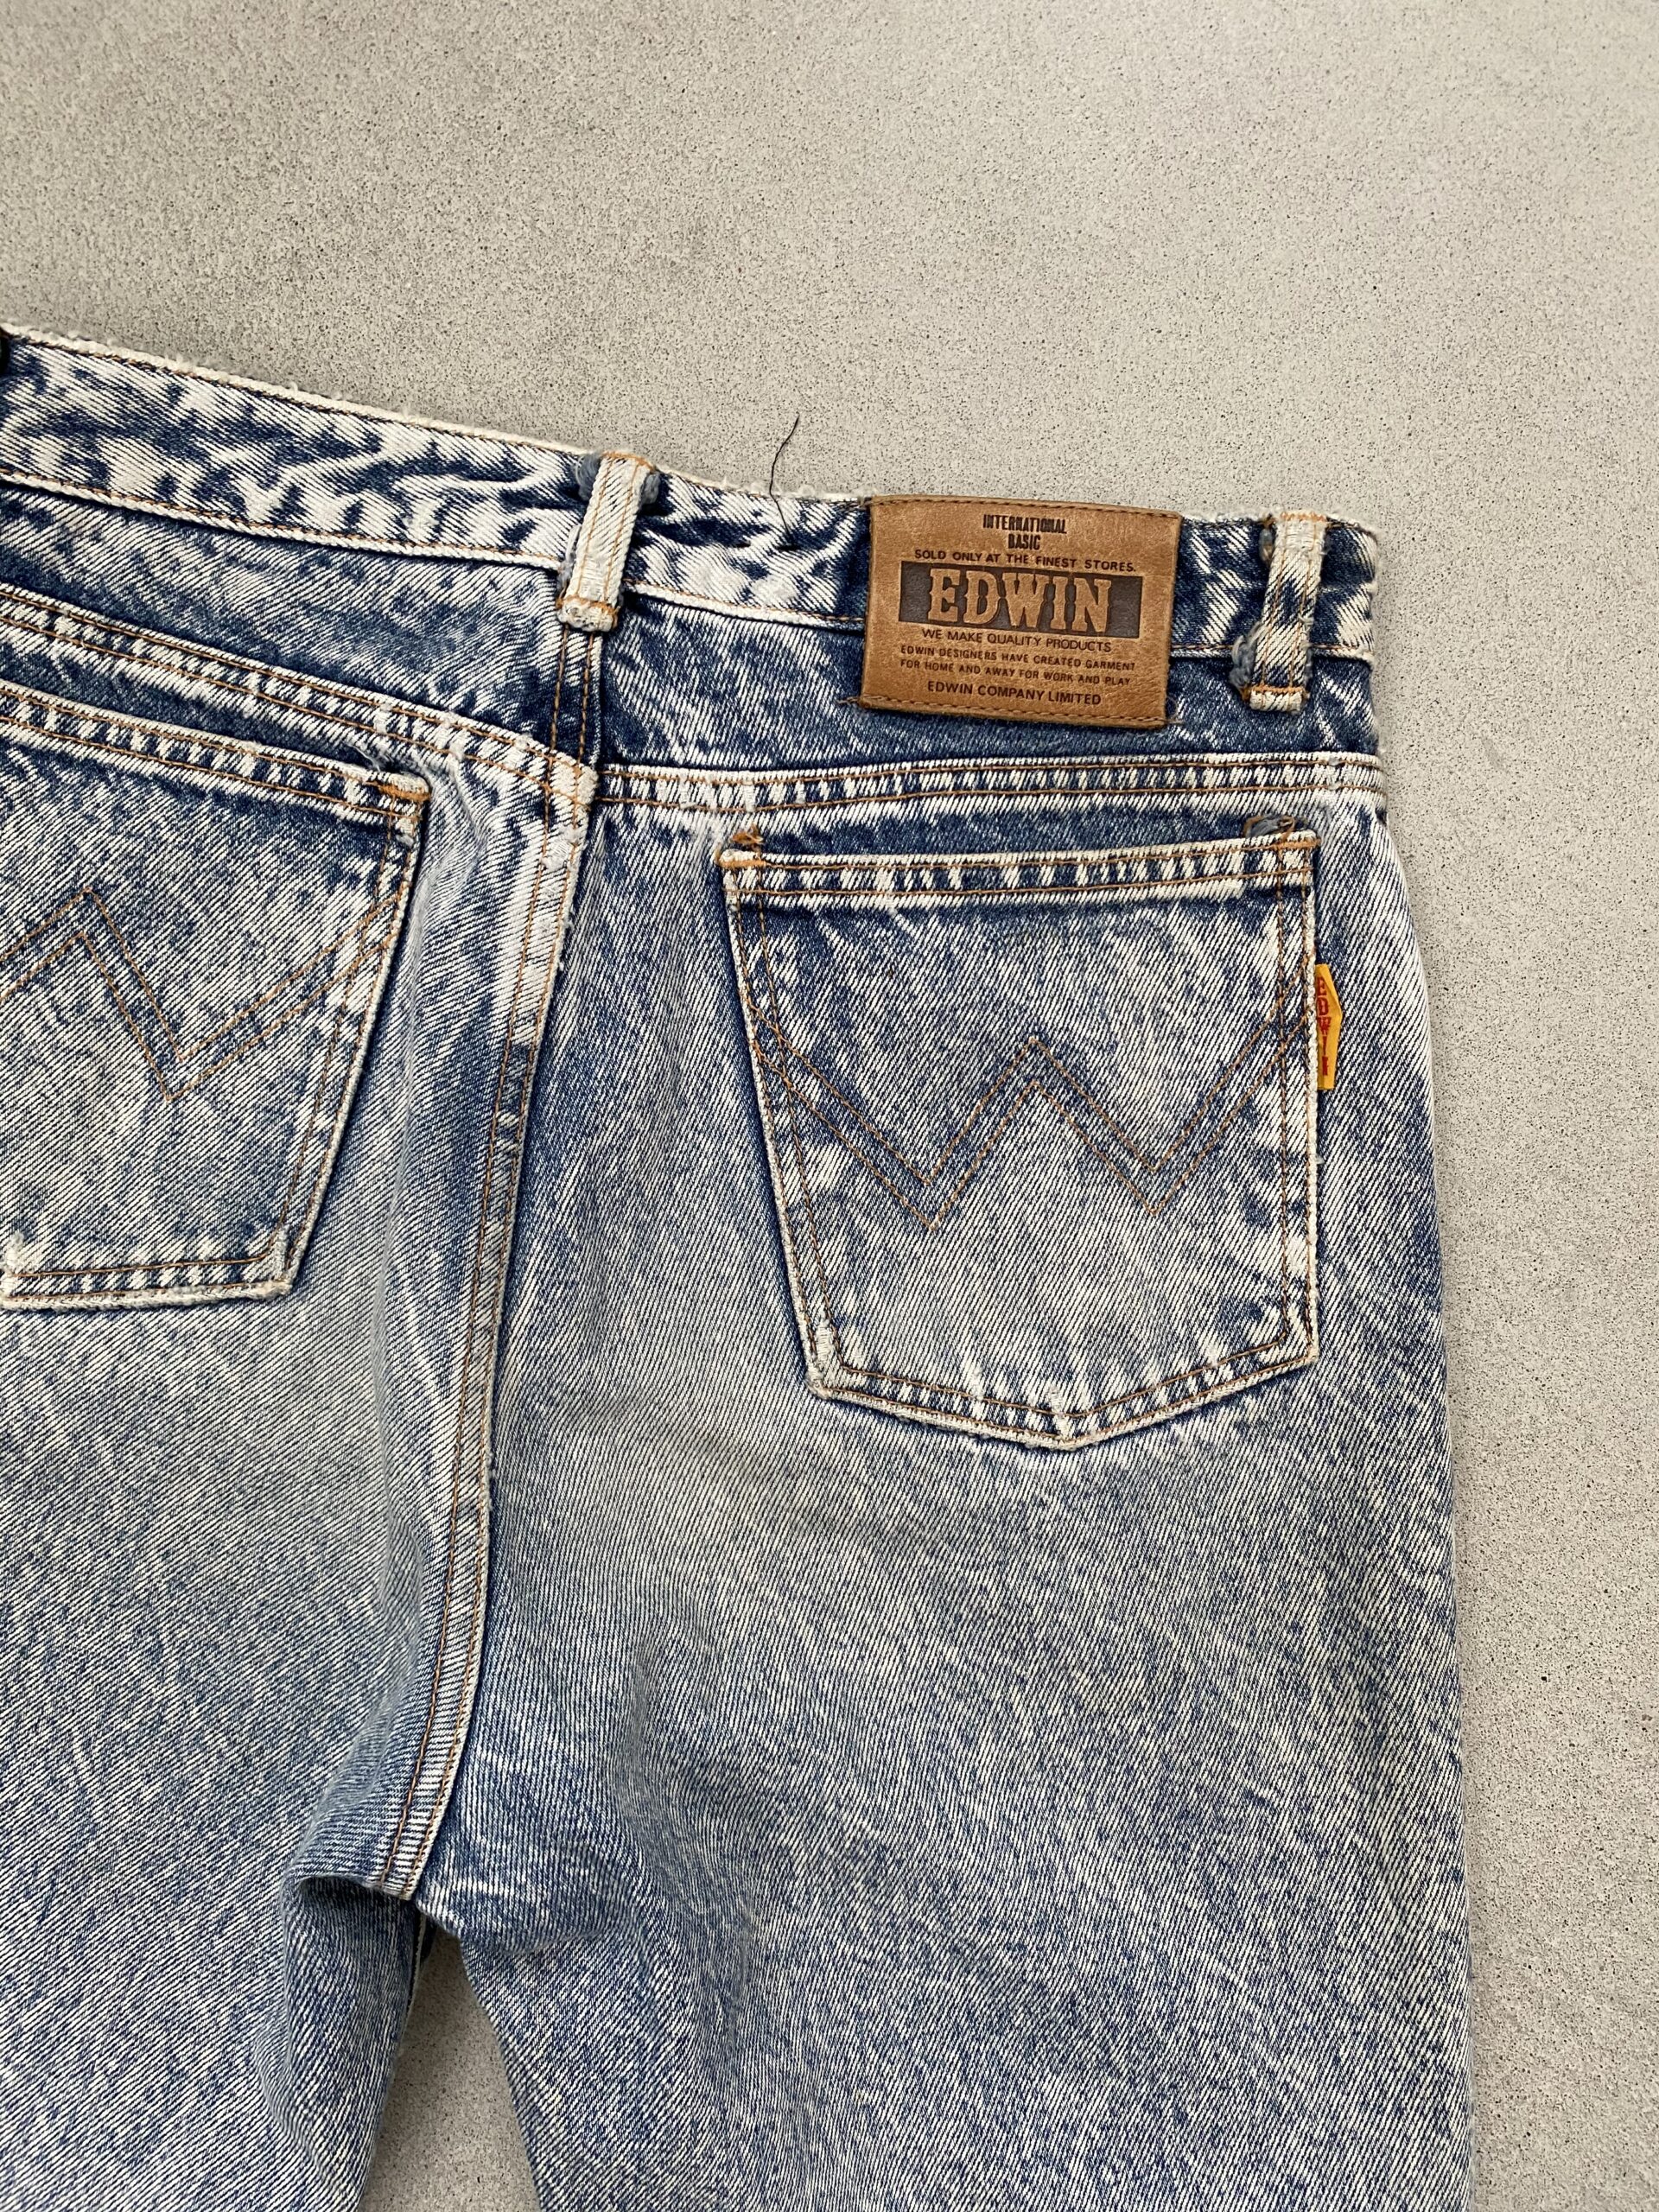 waarschijnlijkheid Adverteerder werkloosheid Edwin jeans | Shop hier tweedehands designer fashion! - Be like Lola